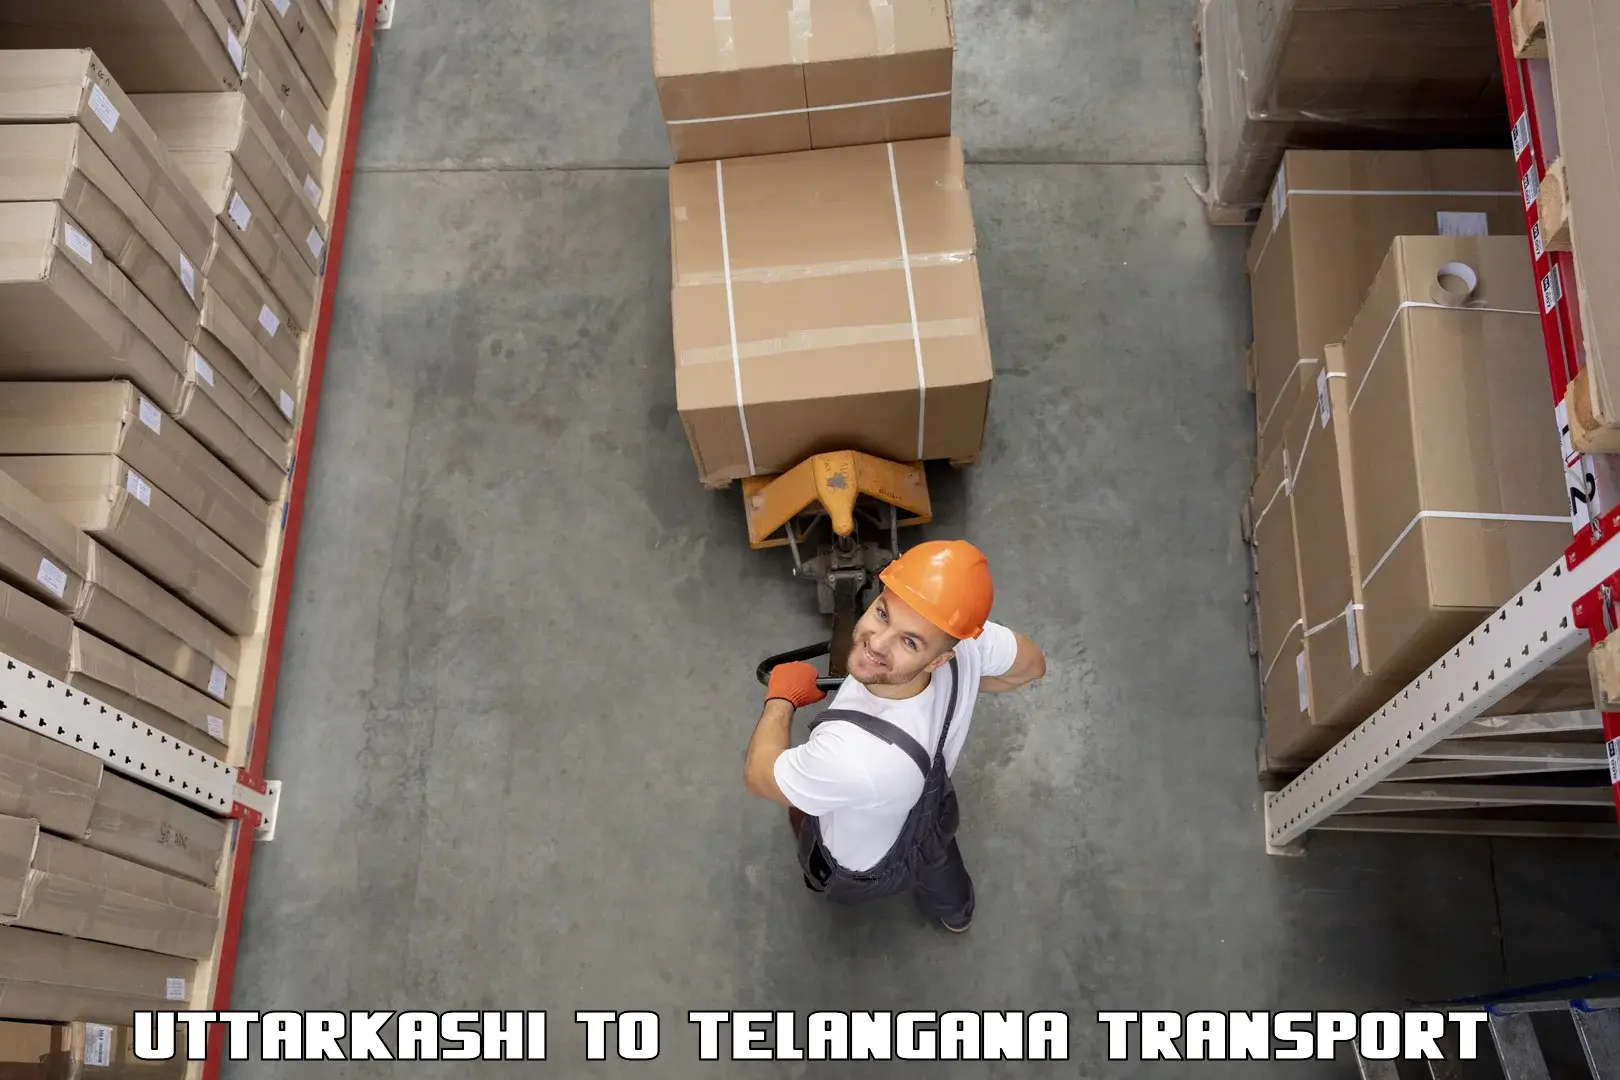 Luggage transport services Uttarkashi to Tiryani